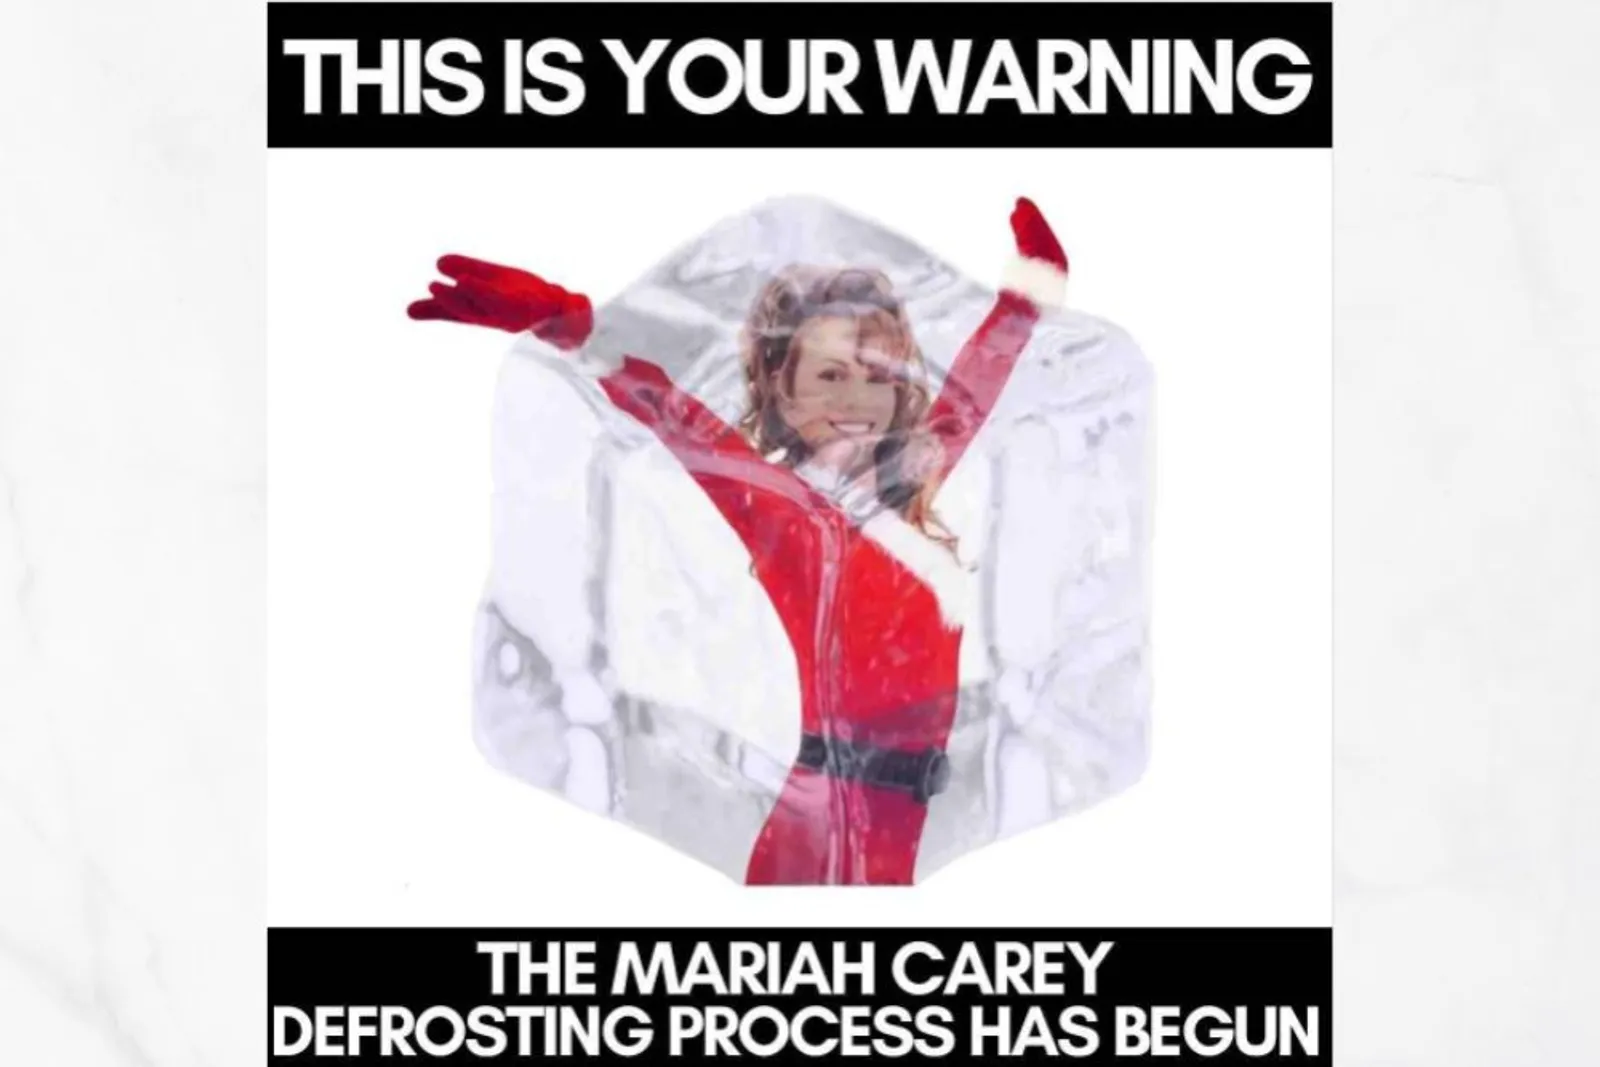 Meme Kocak "All I Want for Christmas" - Mariah Carey yang Kembali Hit!